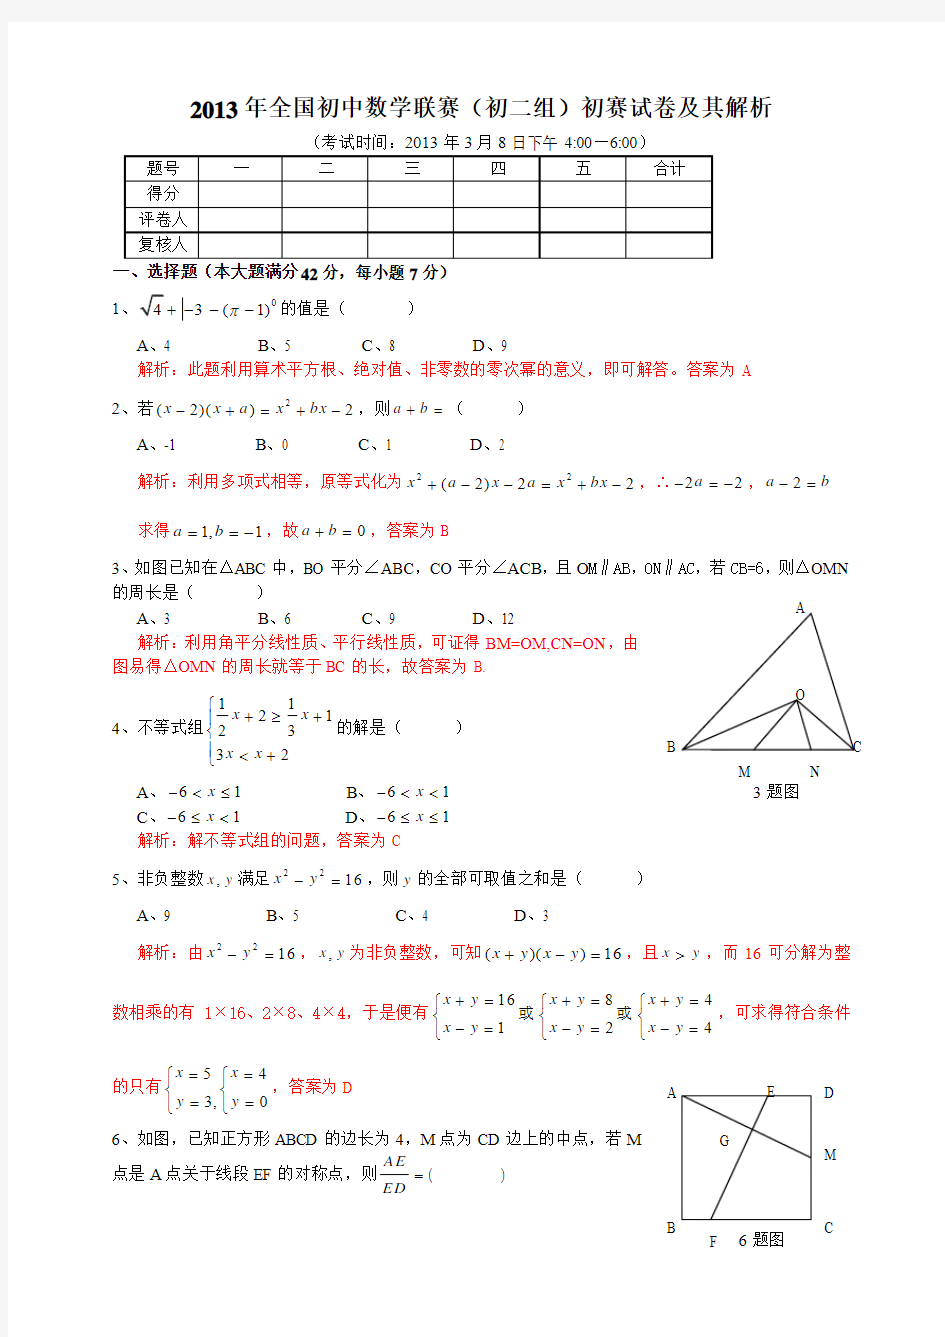 2013年全国初中数学联赛四川省(初二组)初赛试卷及其解析